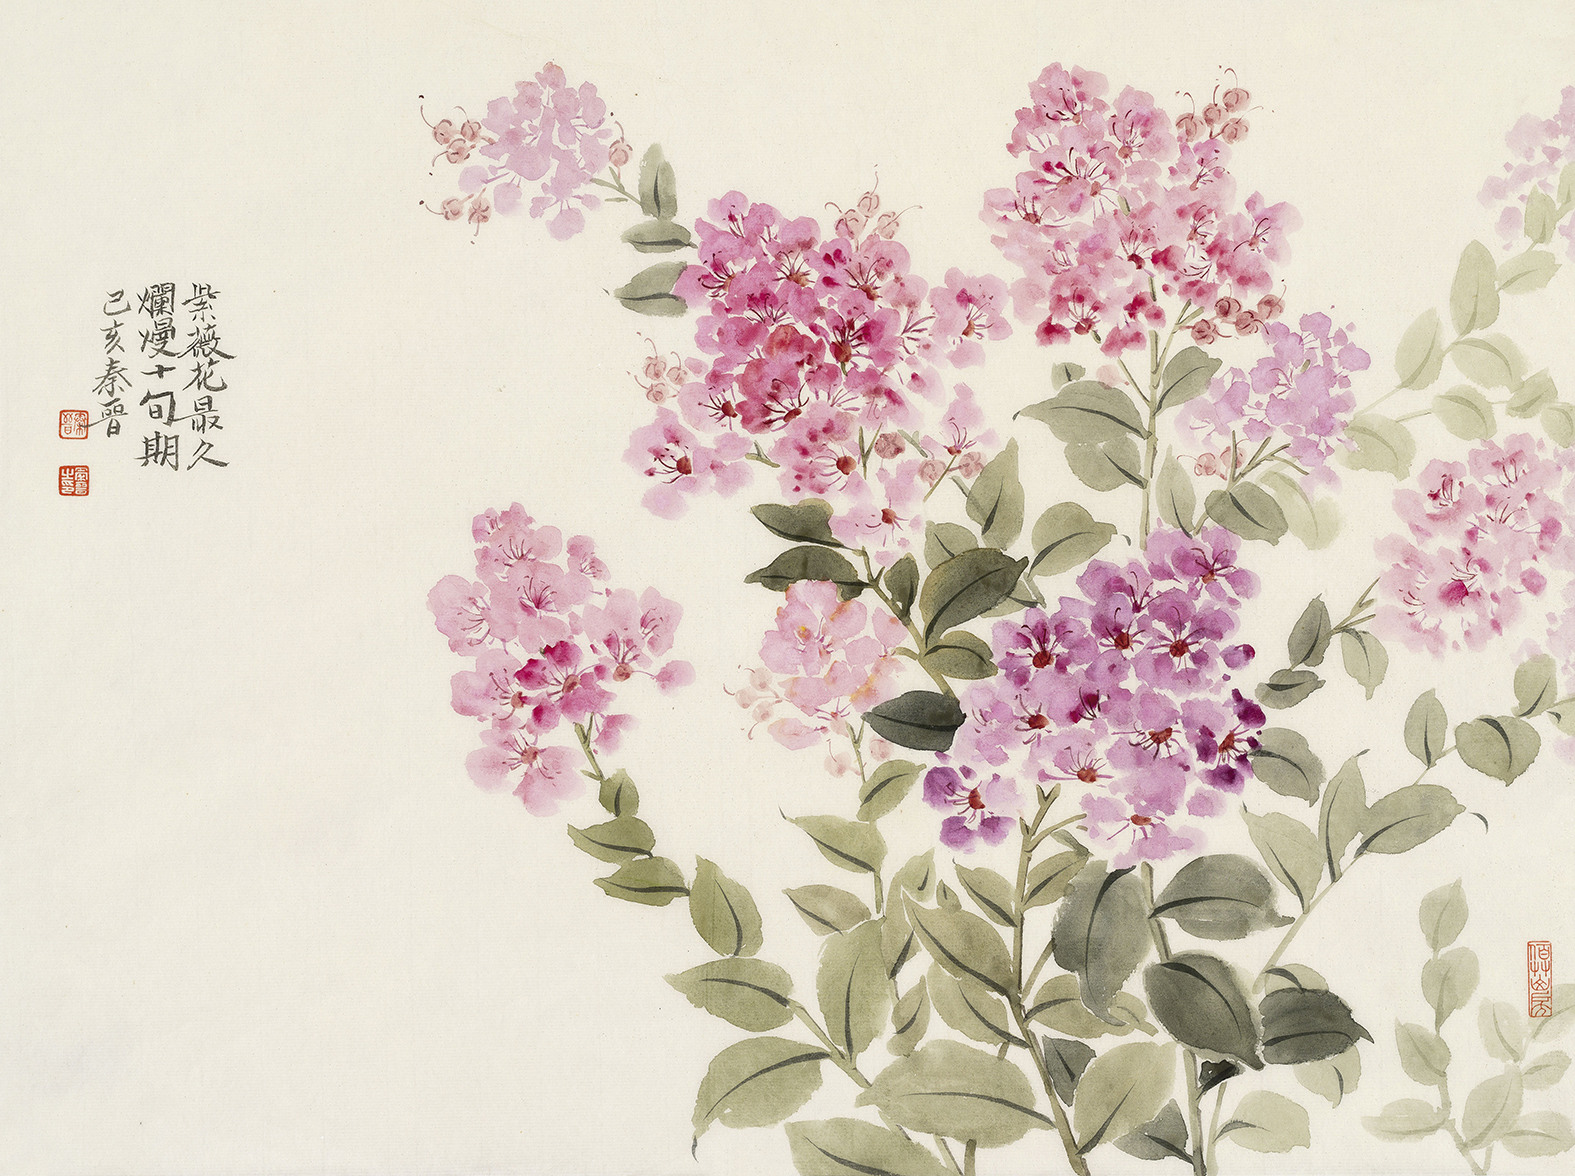 宋秦晋 百日红 纸本设色 45x34cm2019在艺术家笔下的紫薇花活了晚迎秋